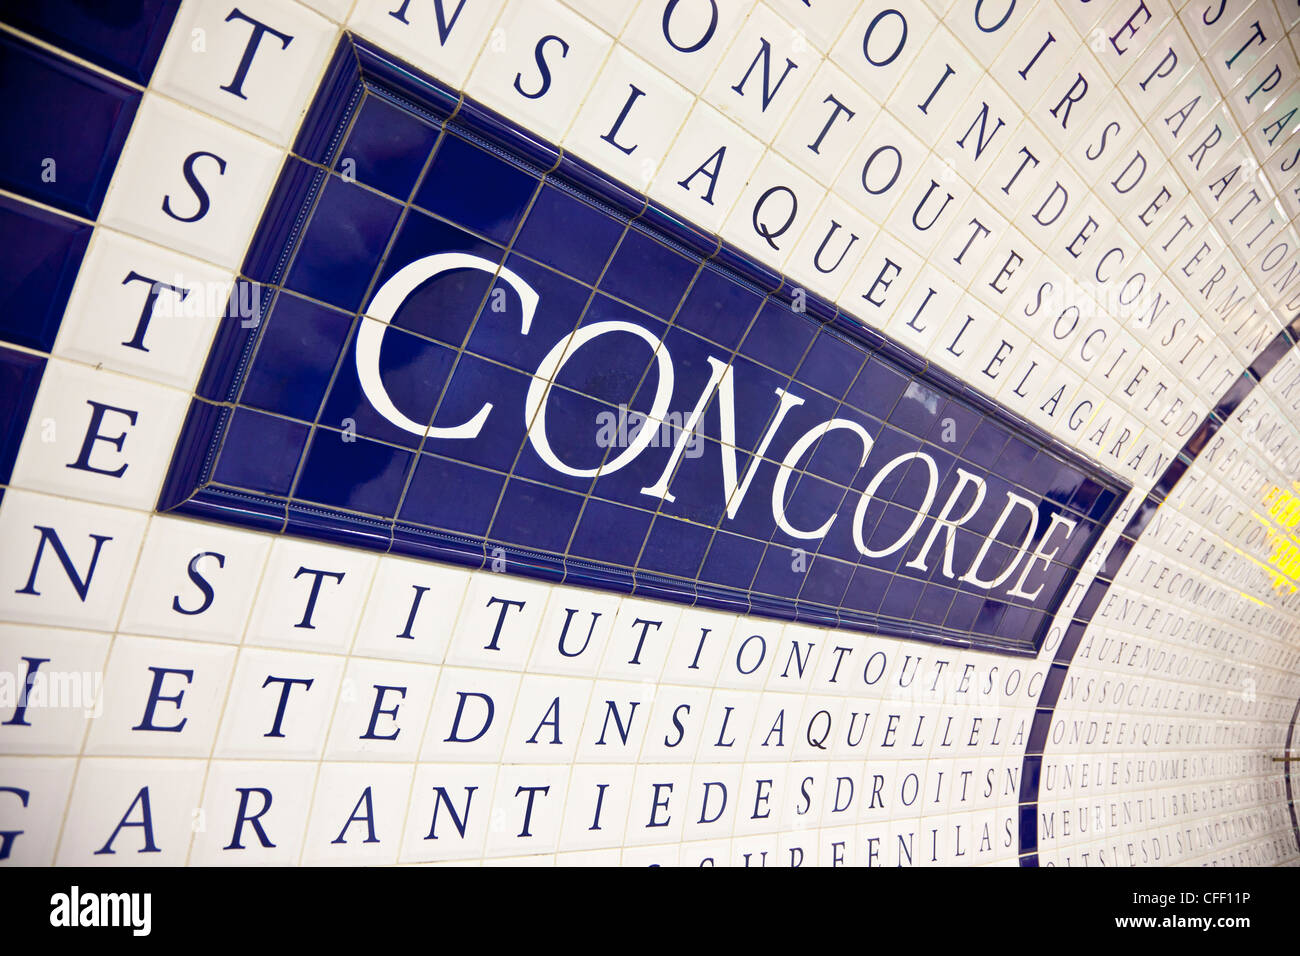 Place de la Concorde subway station, Paris, France, Europe Stock Photo